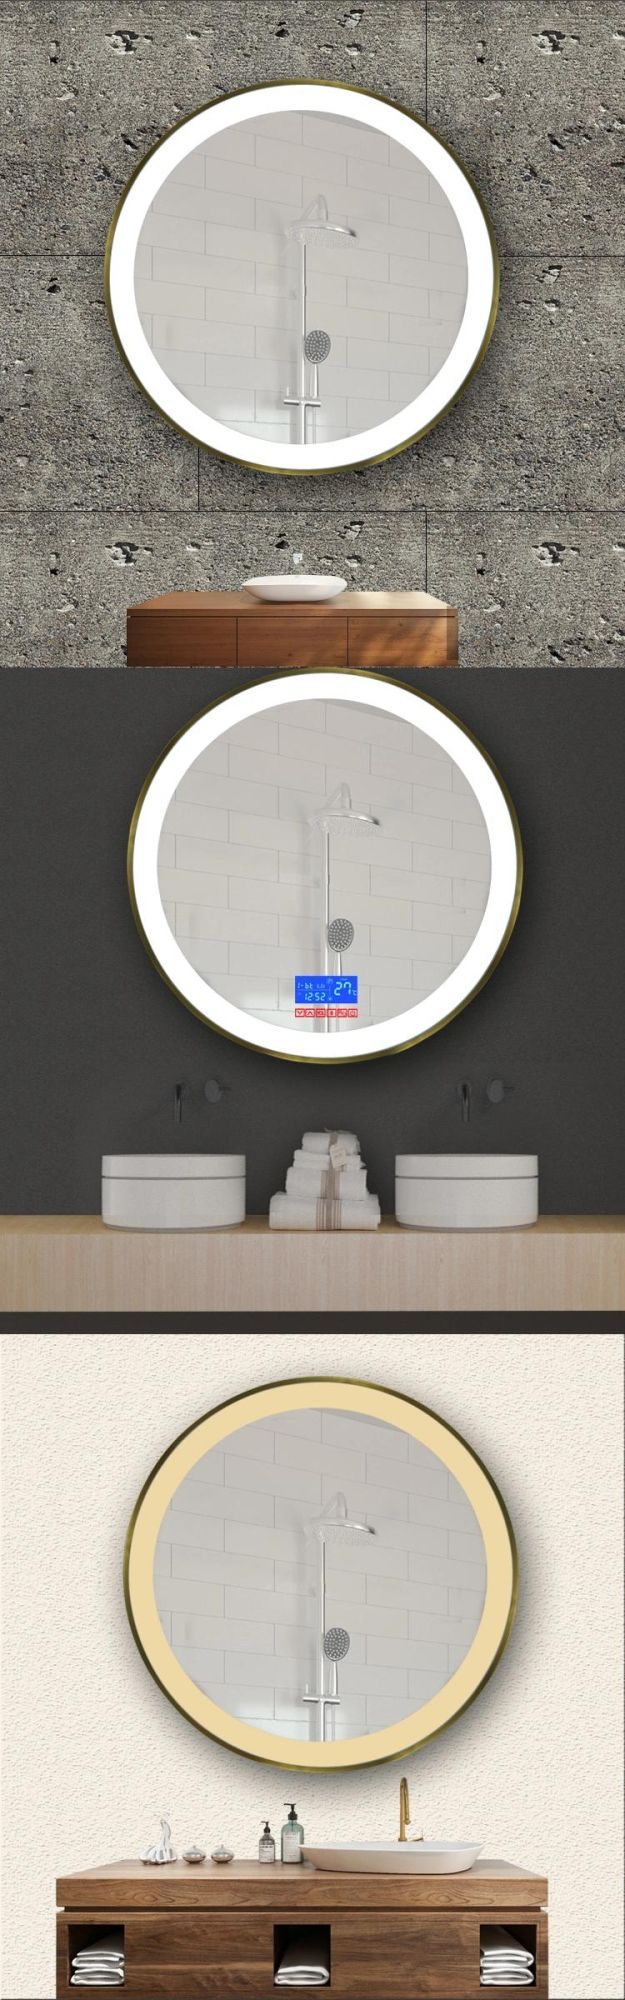 Round Shape LED Customized Size and Frame Illuminate Bathroom Mirror